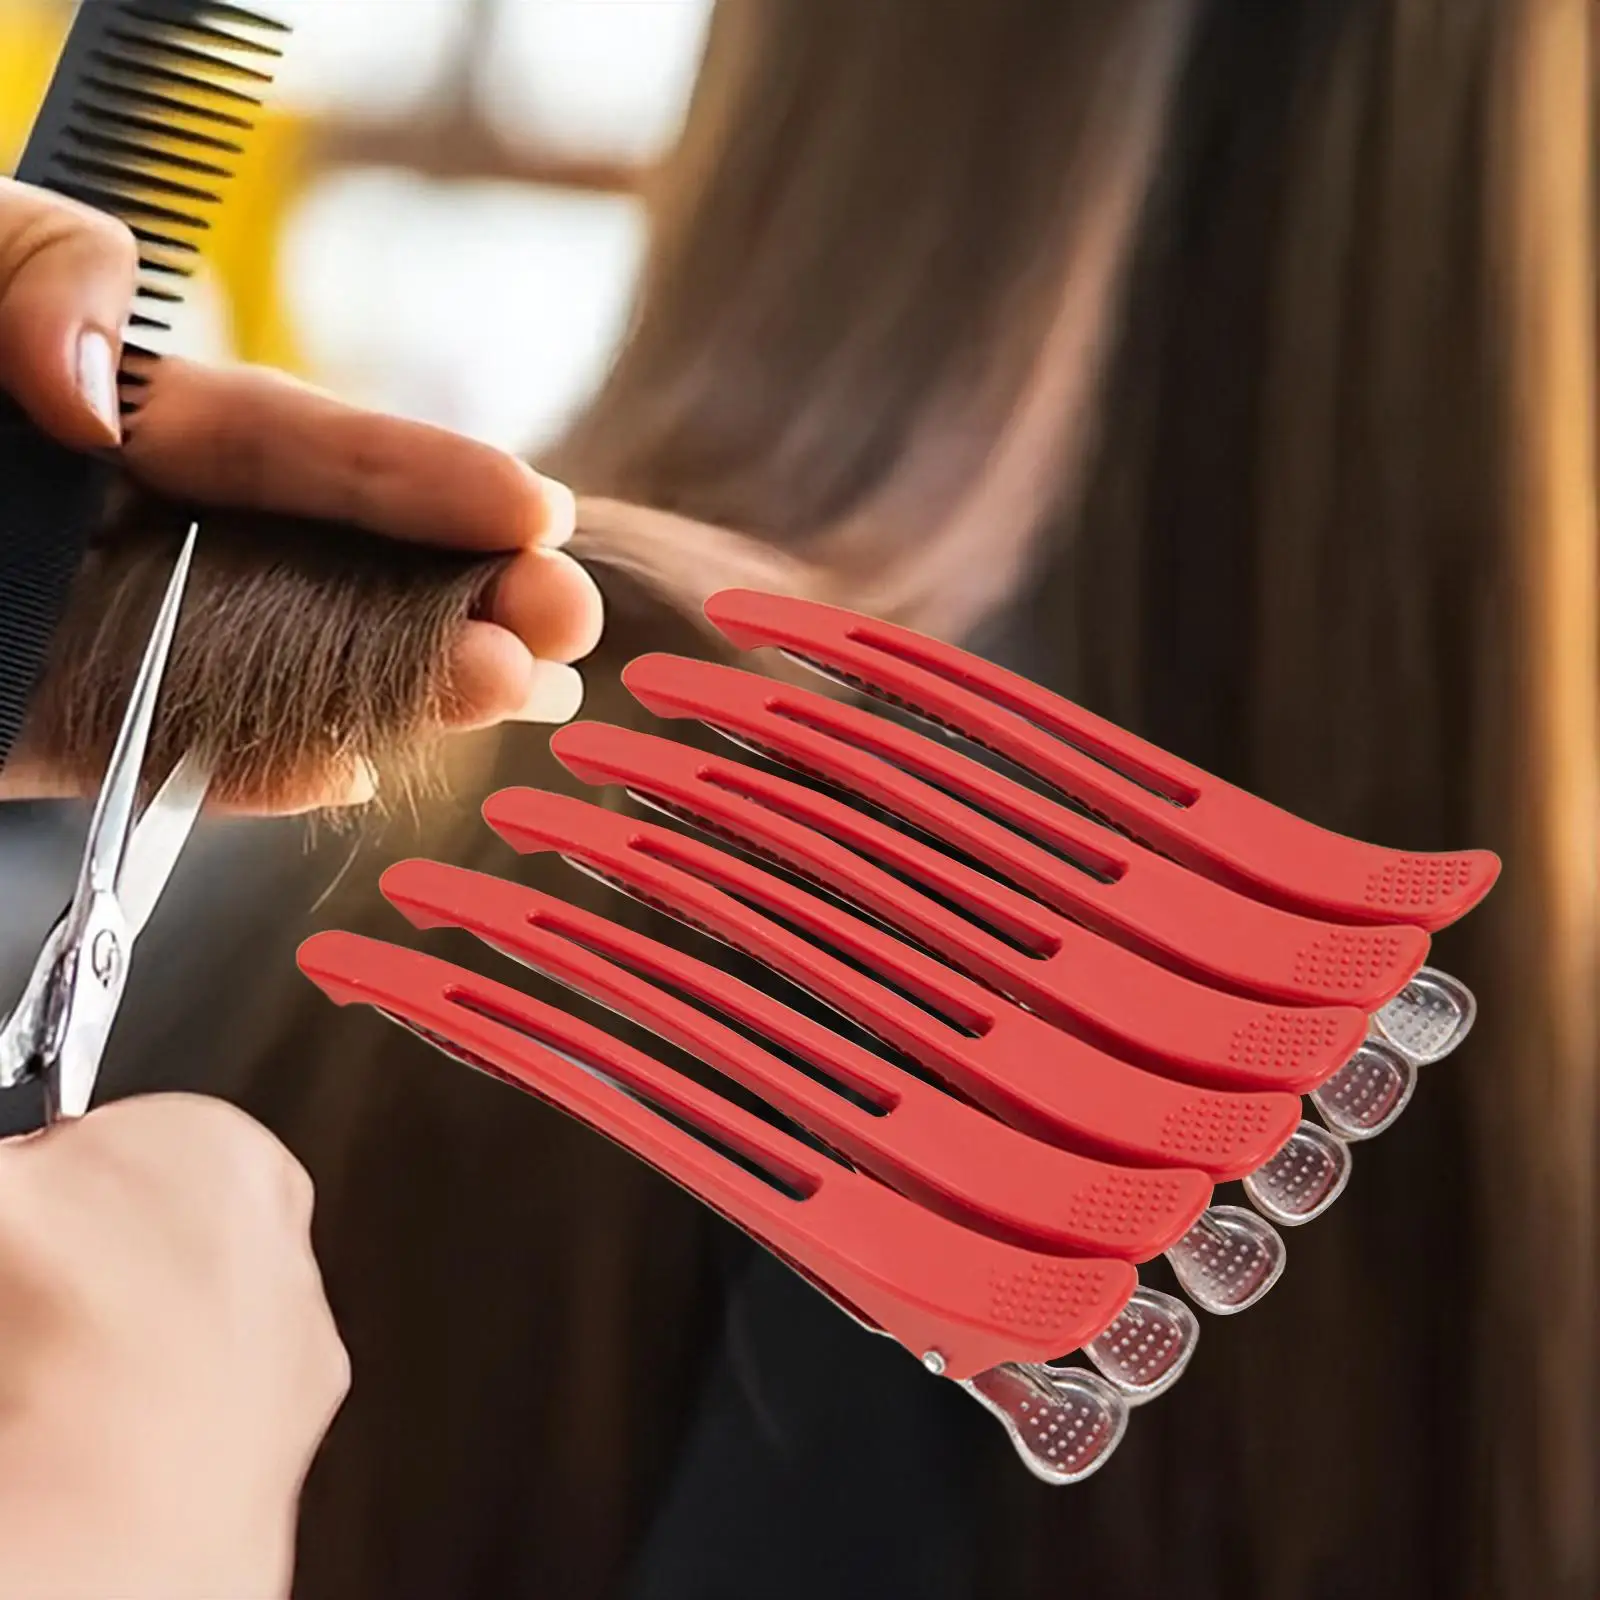 6Pcs Salon Hair Sectioning Clips Duck Billed Hair Clips for Hair Drying Salon Home Styling Sectioning Women Men Hairdresser